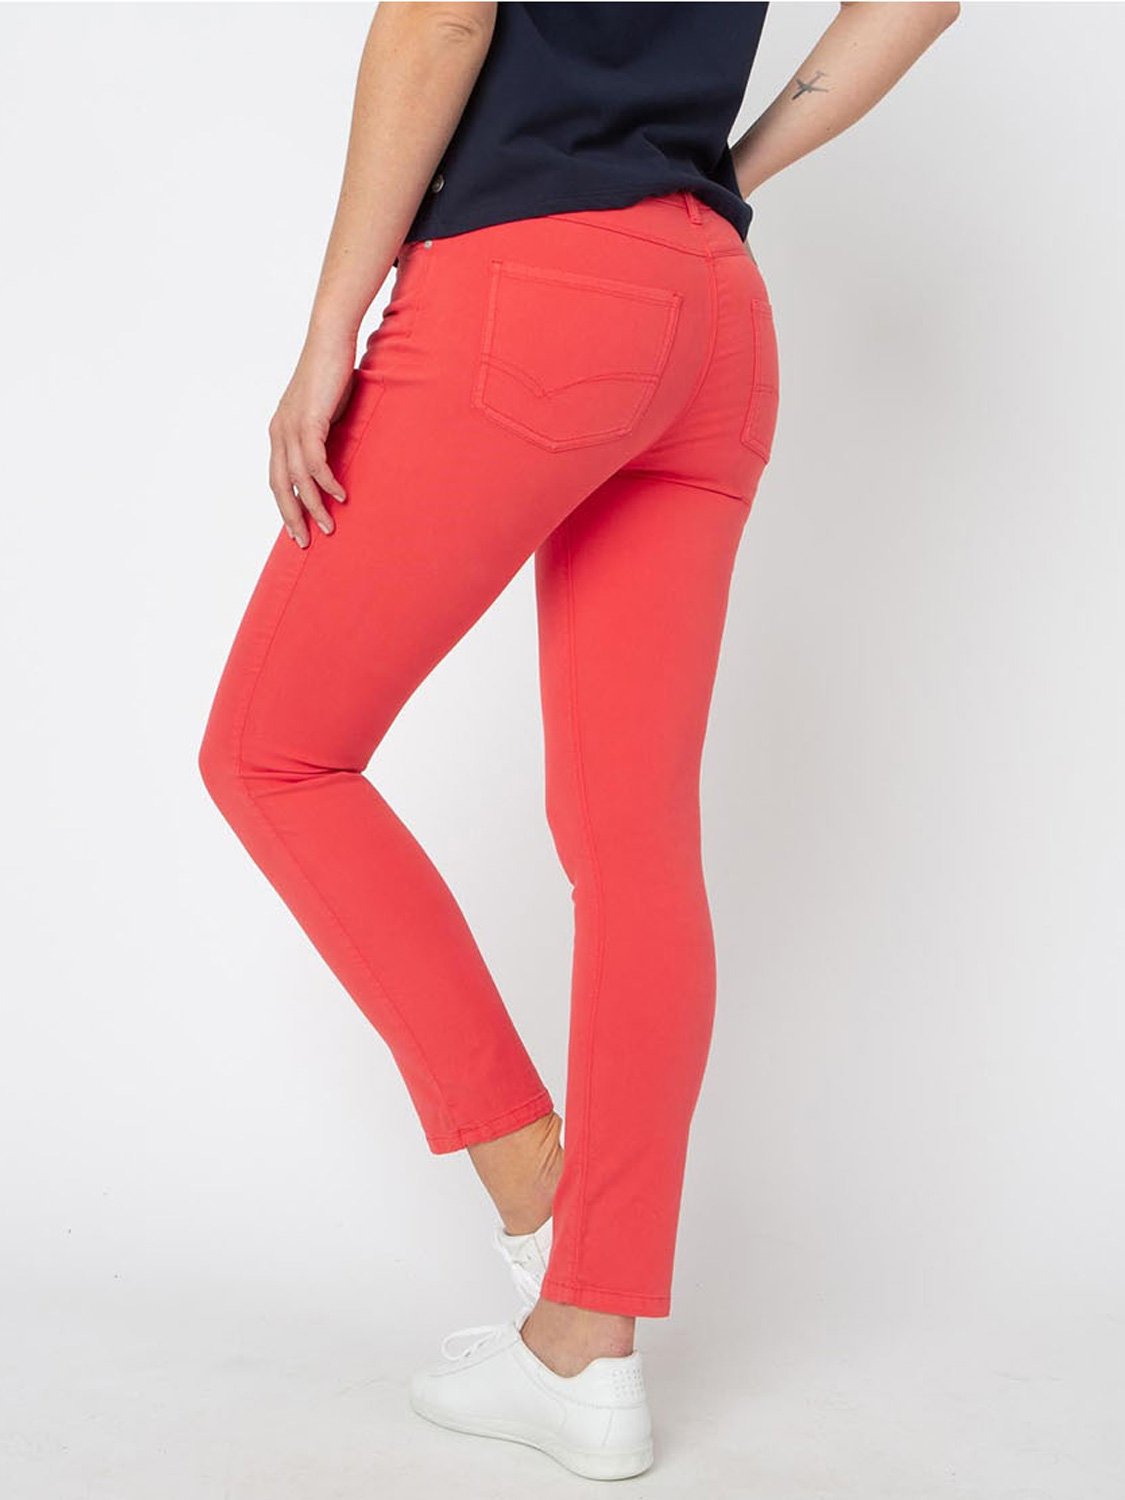 Pantalon Femme Coton Recyclé Rouge